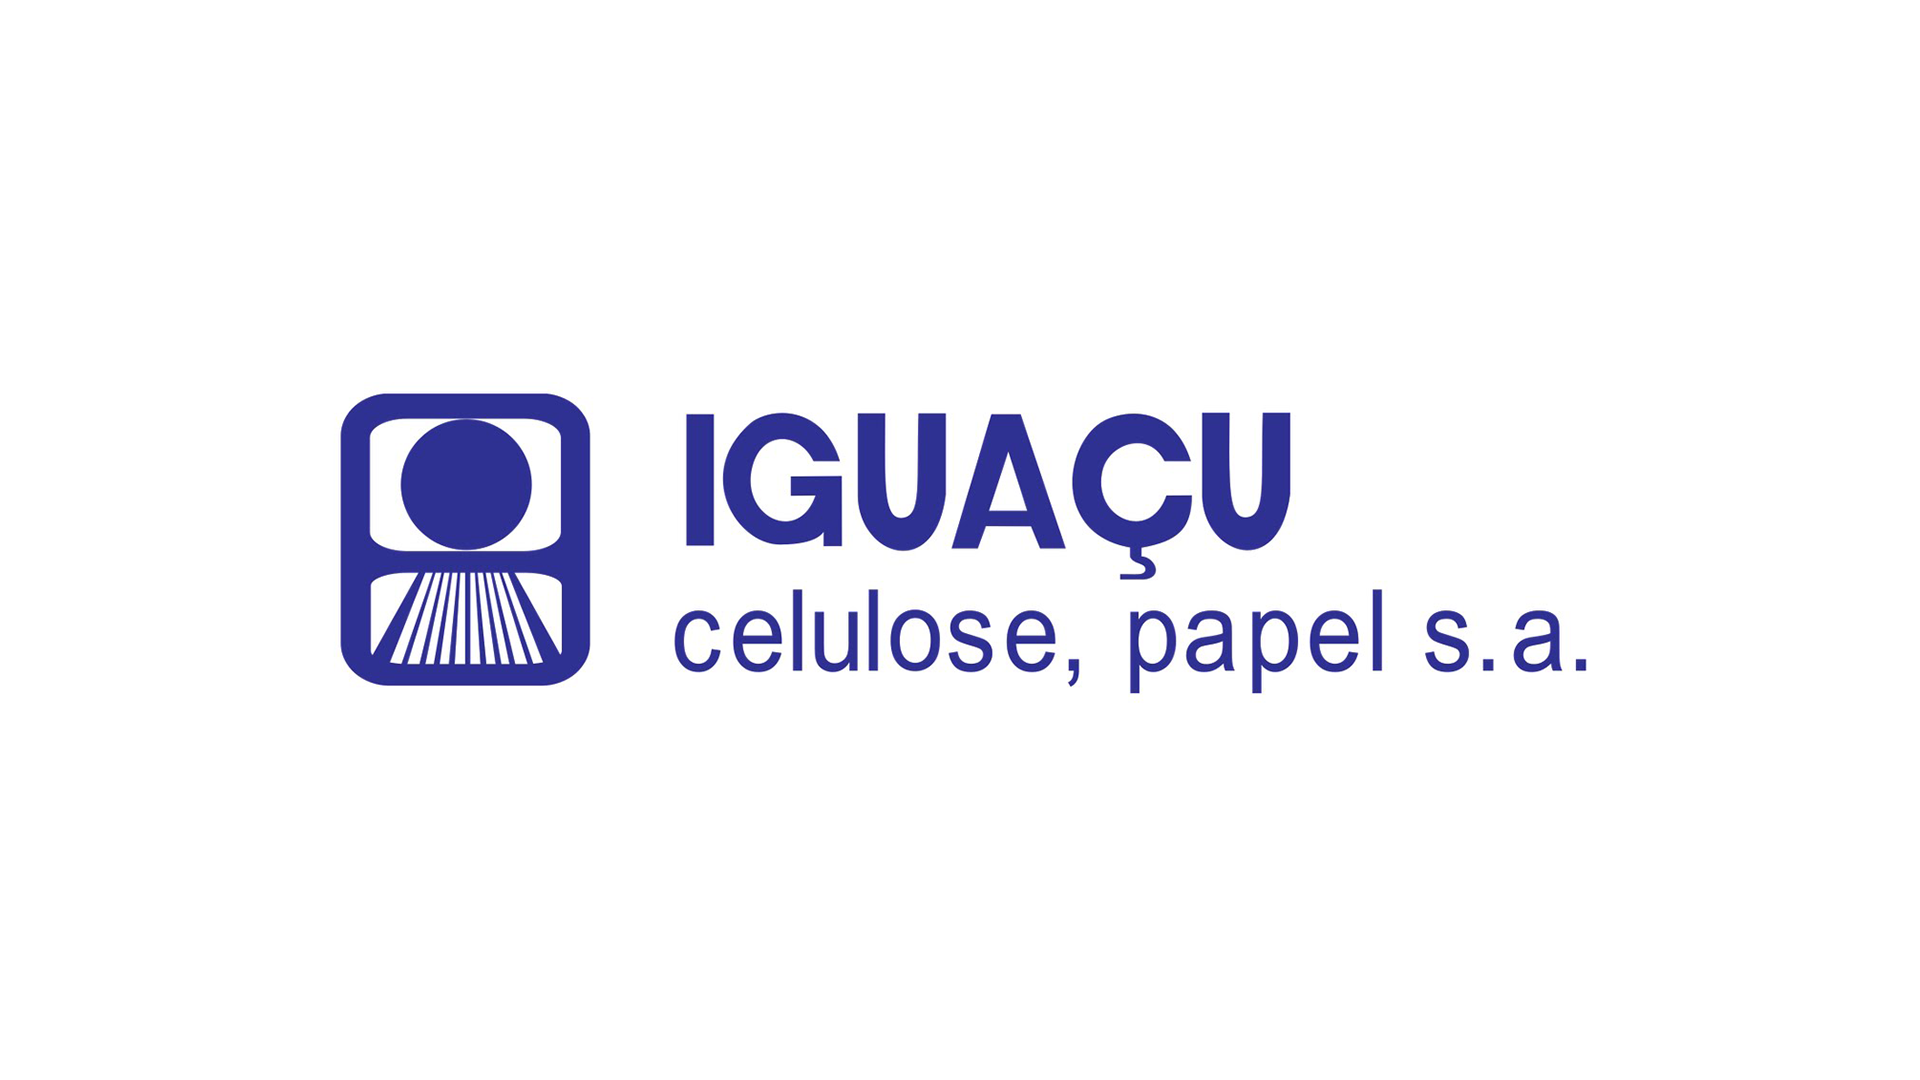 igacu-logo.png